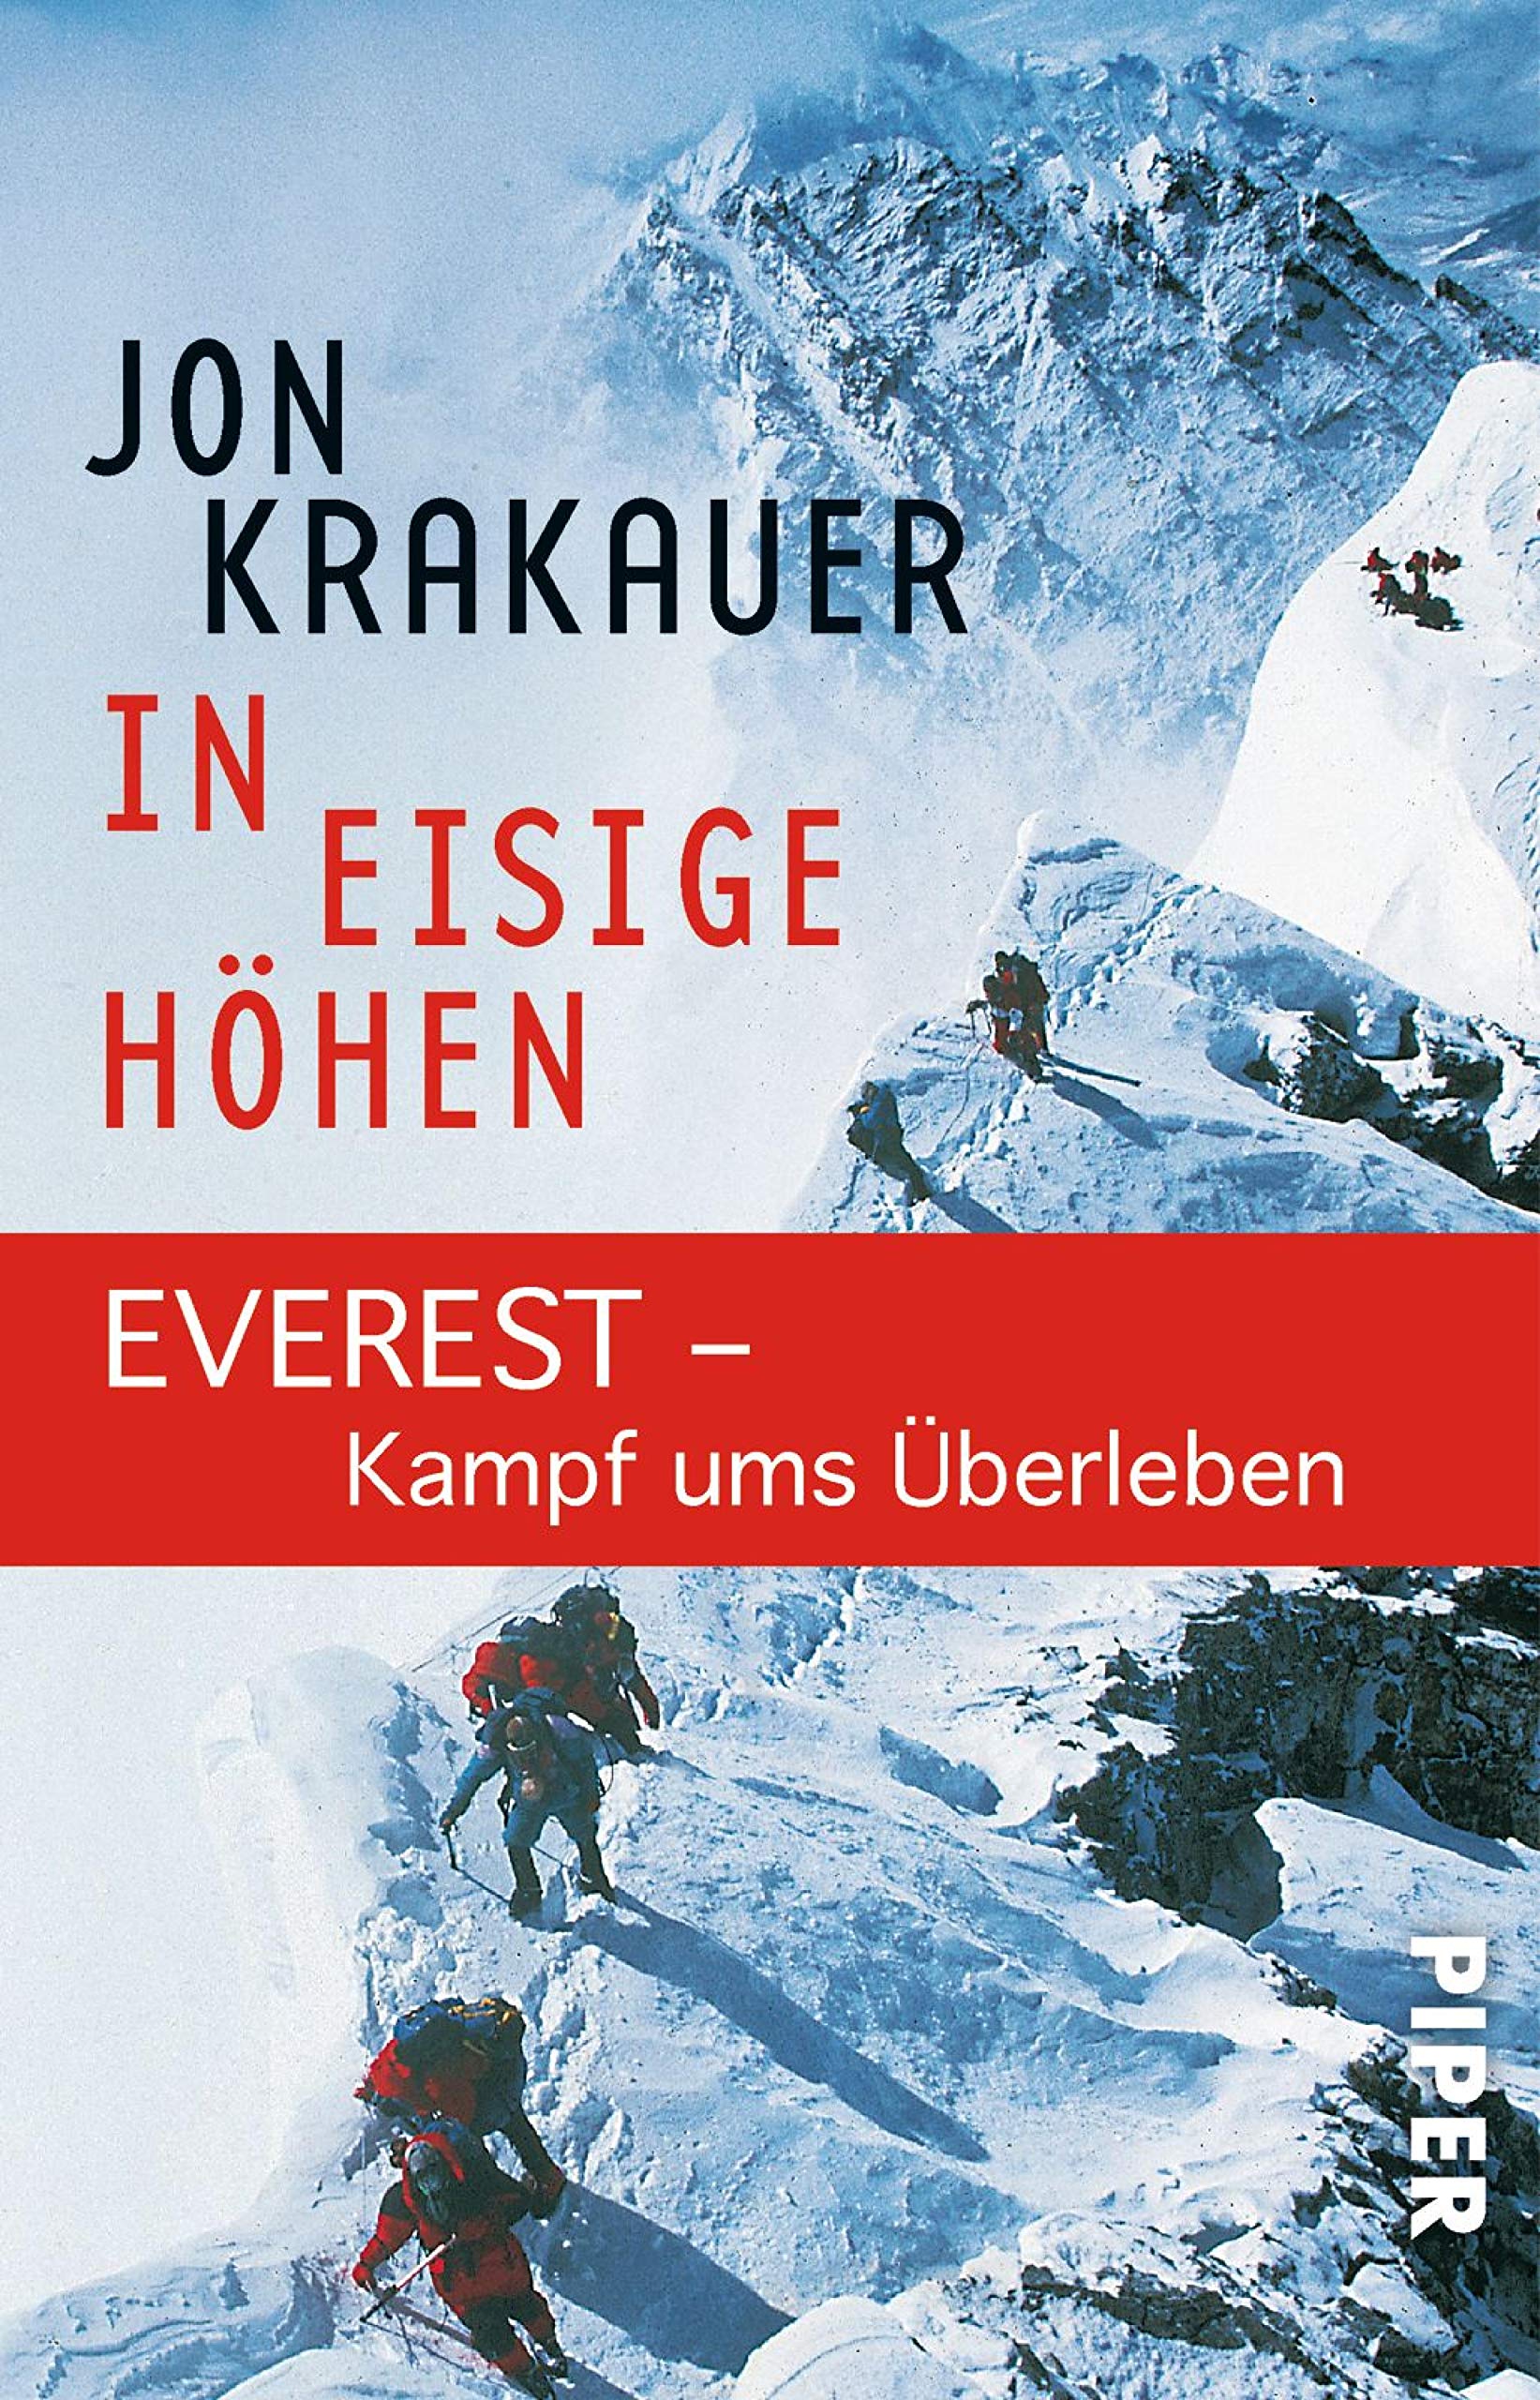 In eisige Höhen: EVEREST - Kampf ums Überleben (German Edition)